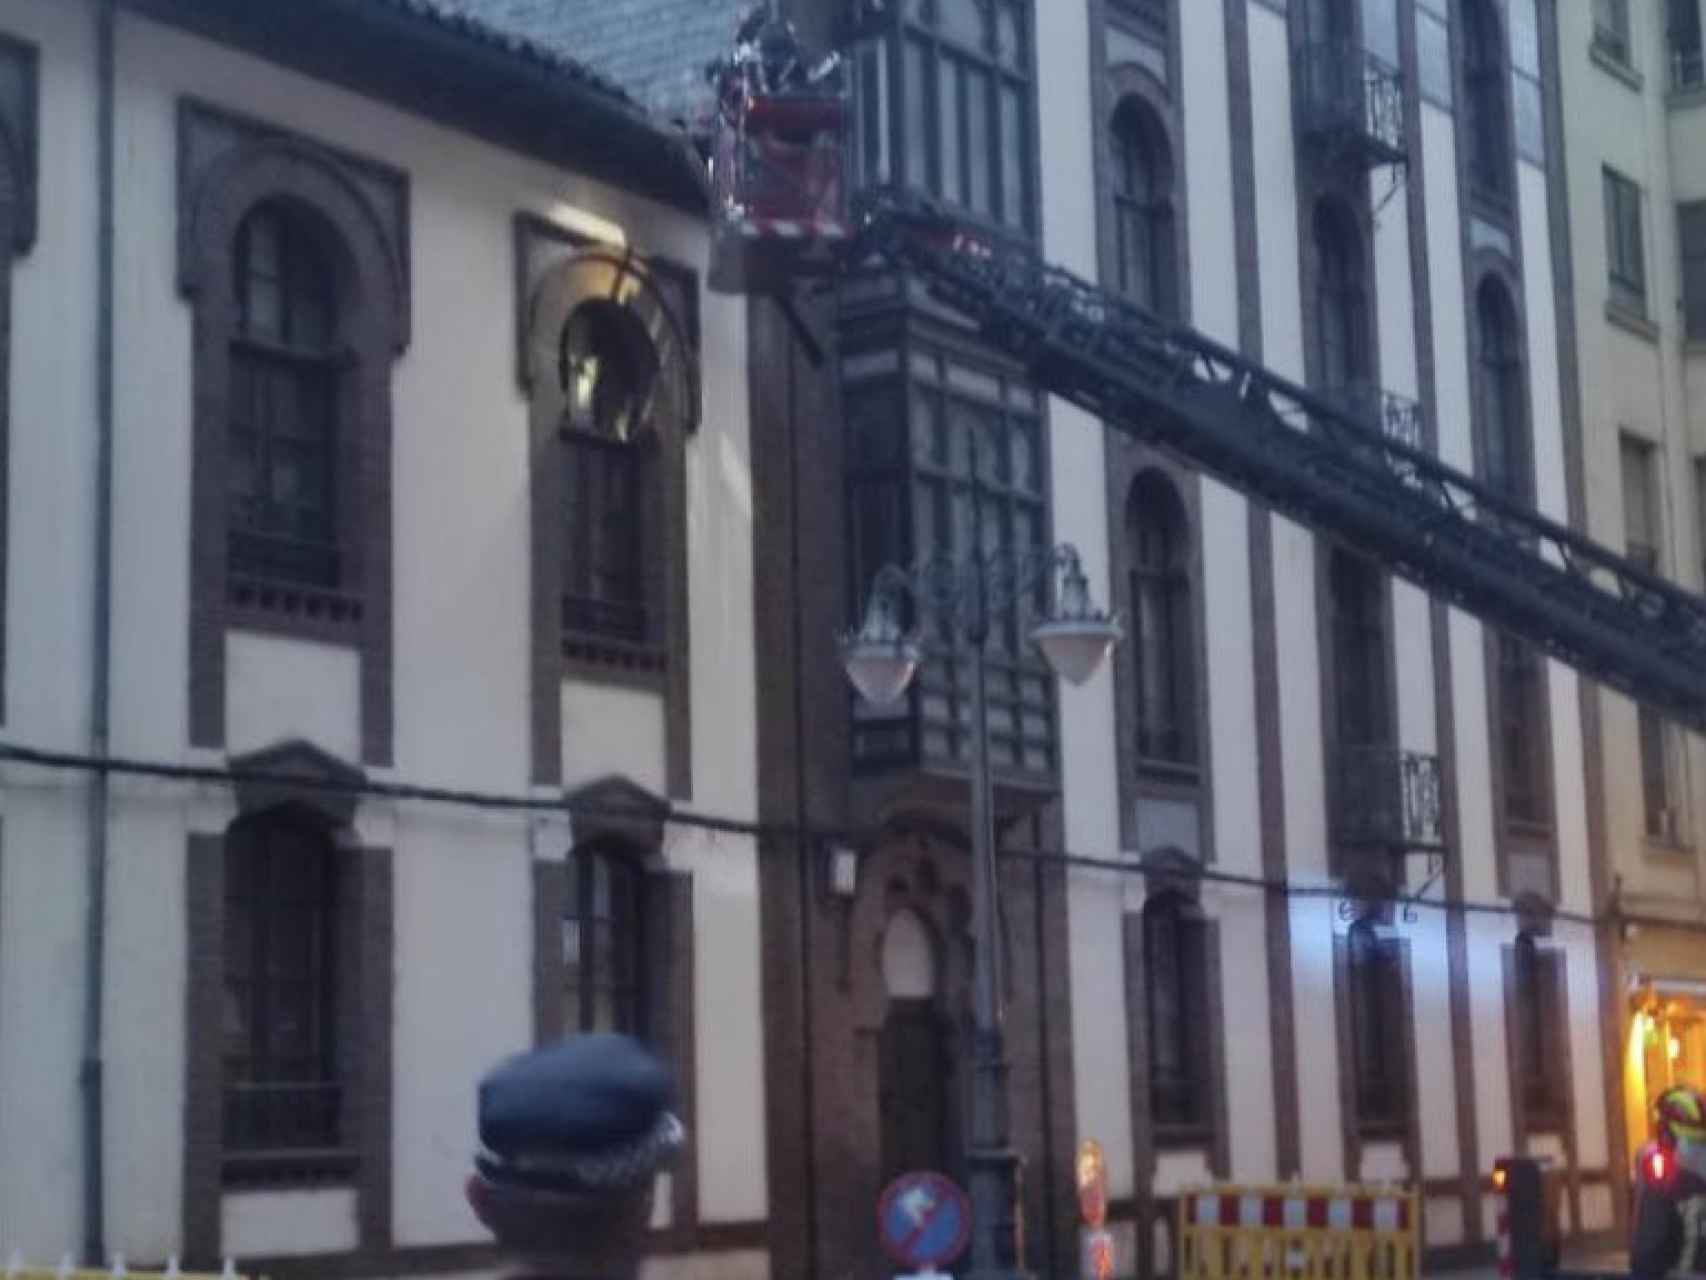 Policía Local y Bomberos de León intervienen en una caída de cascotes en la cornisa de un palacio neomudéjar